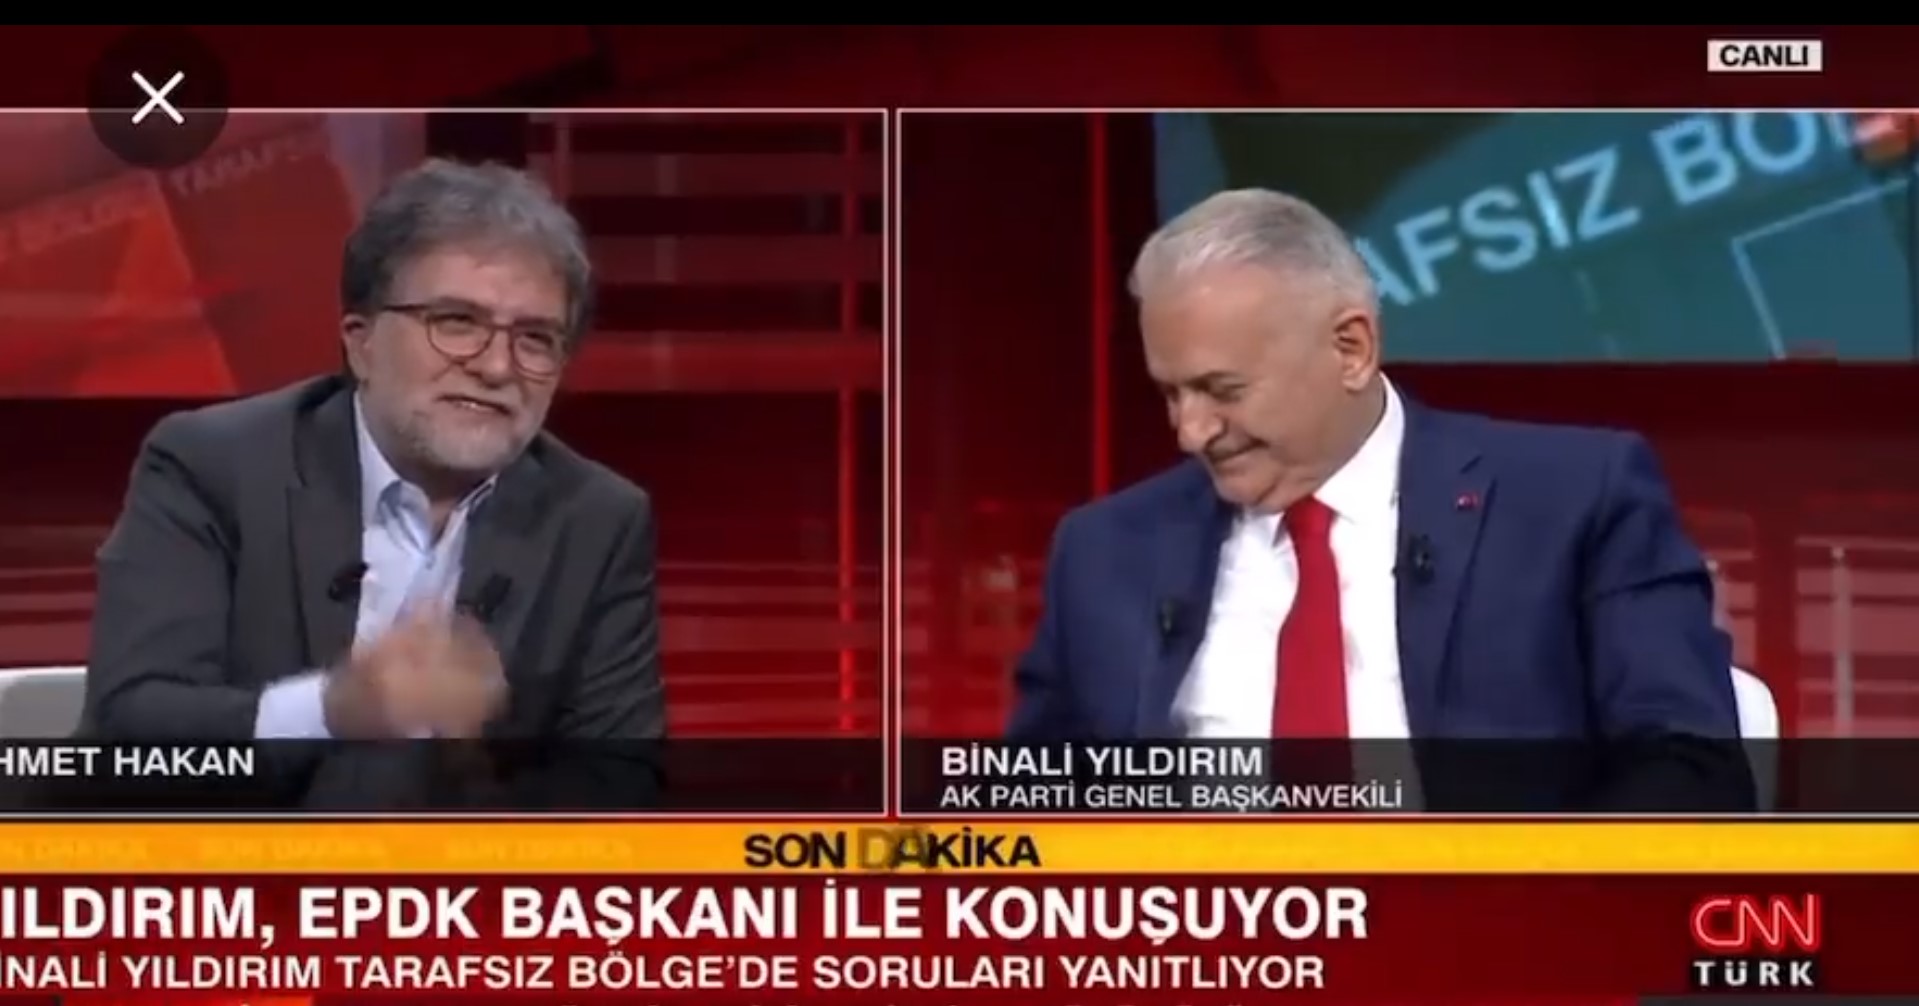 Binali Yıldırım samimiyeti denen bir şey var! Türk televizyon tarihinde bir ilk! Binali Yıldırım canlı yayında EPDK Başkanı'nın telefonunu açtı! Şu an canlı yayındayım